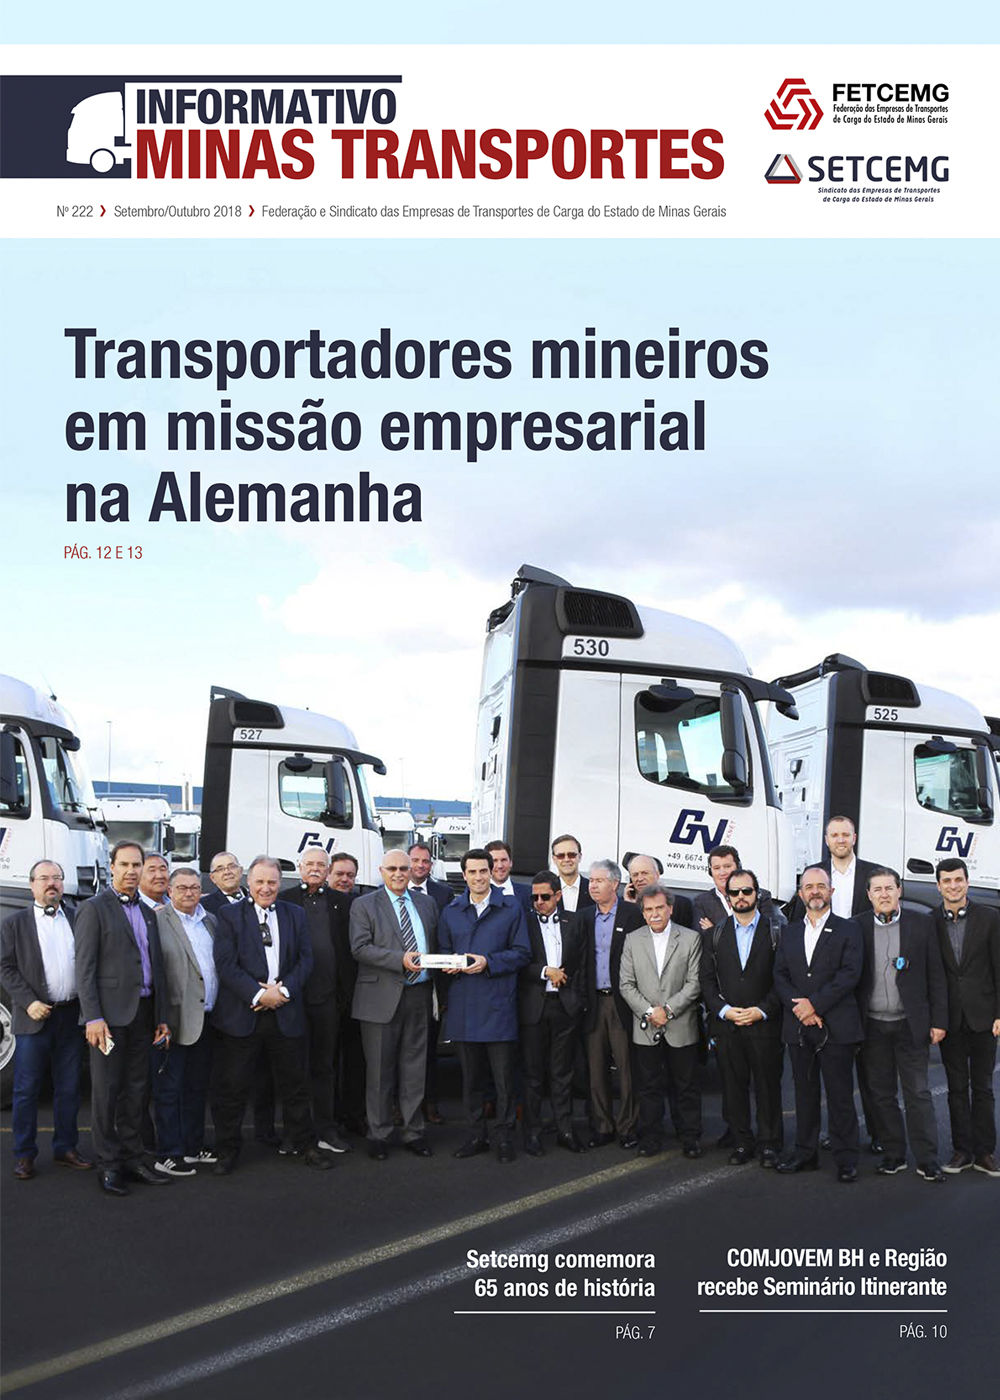 Informativo Minas Transportes - n 222